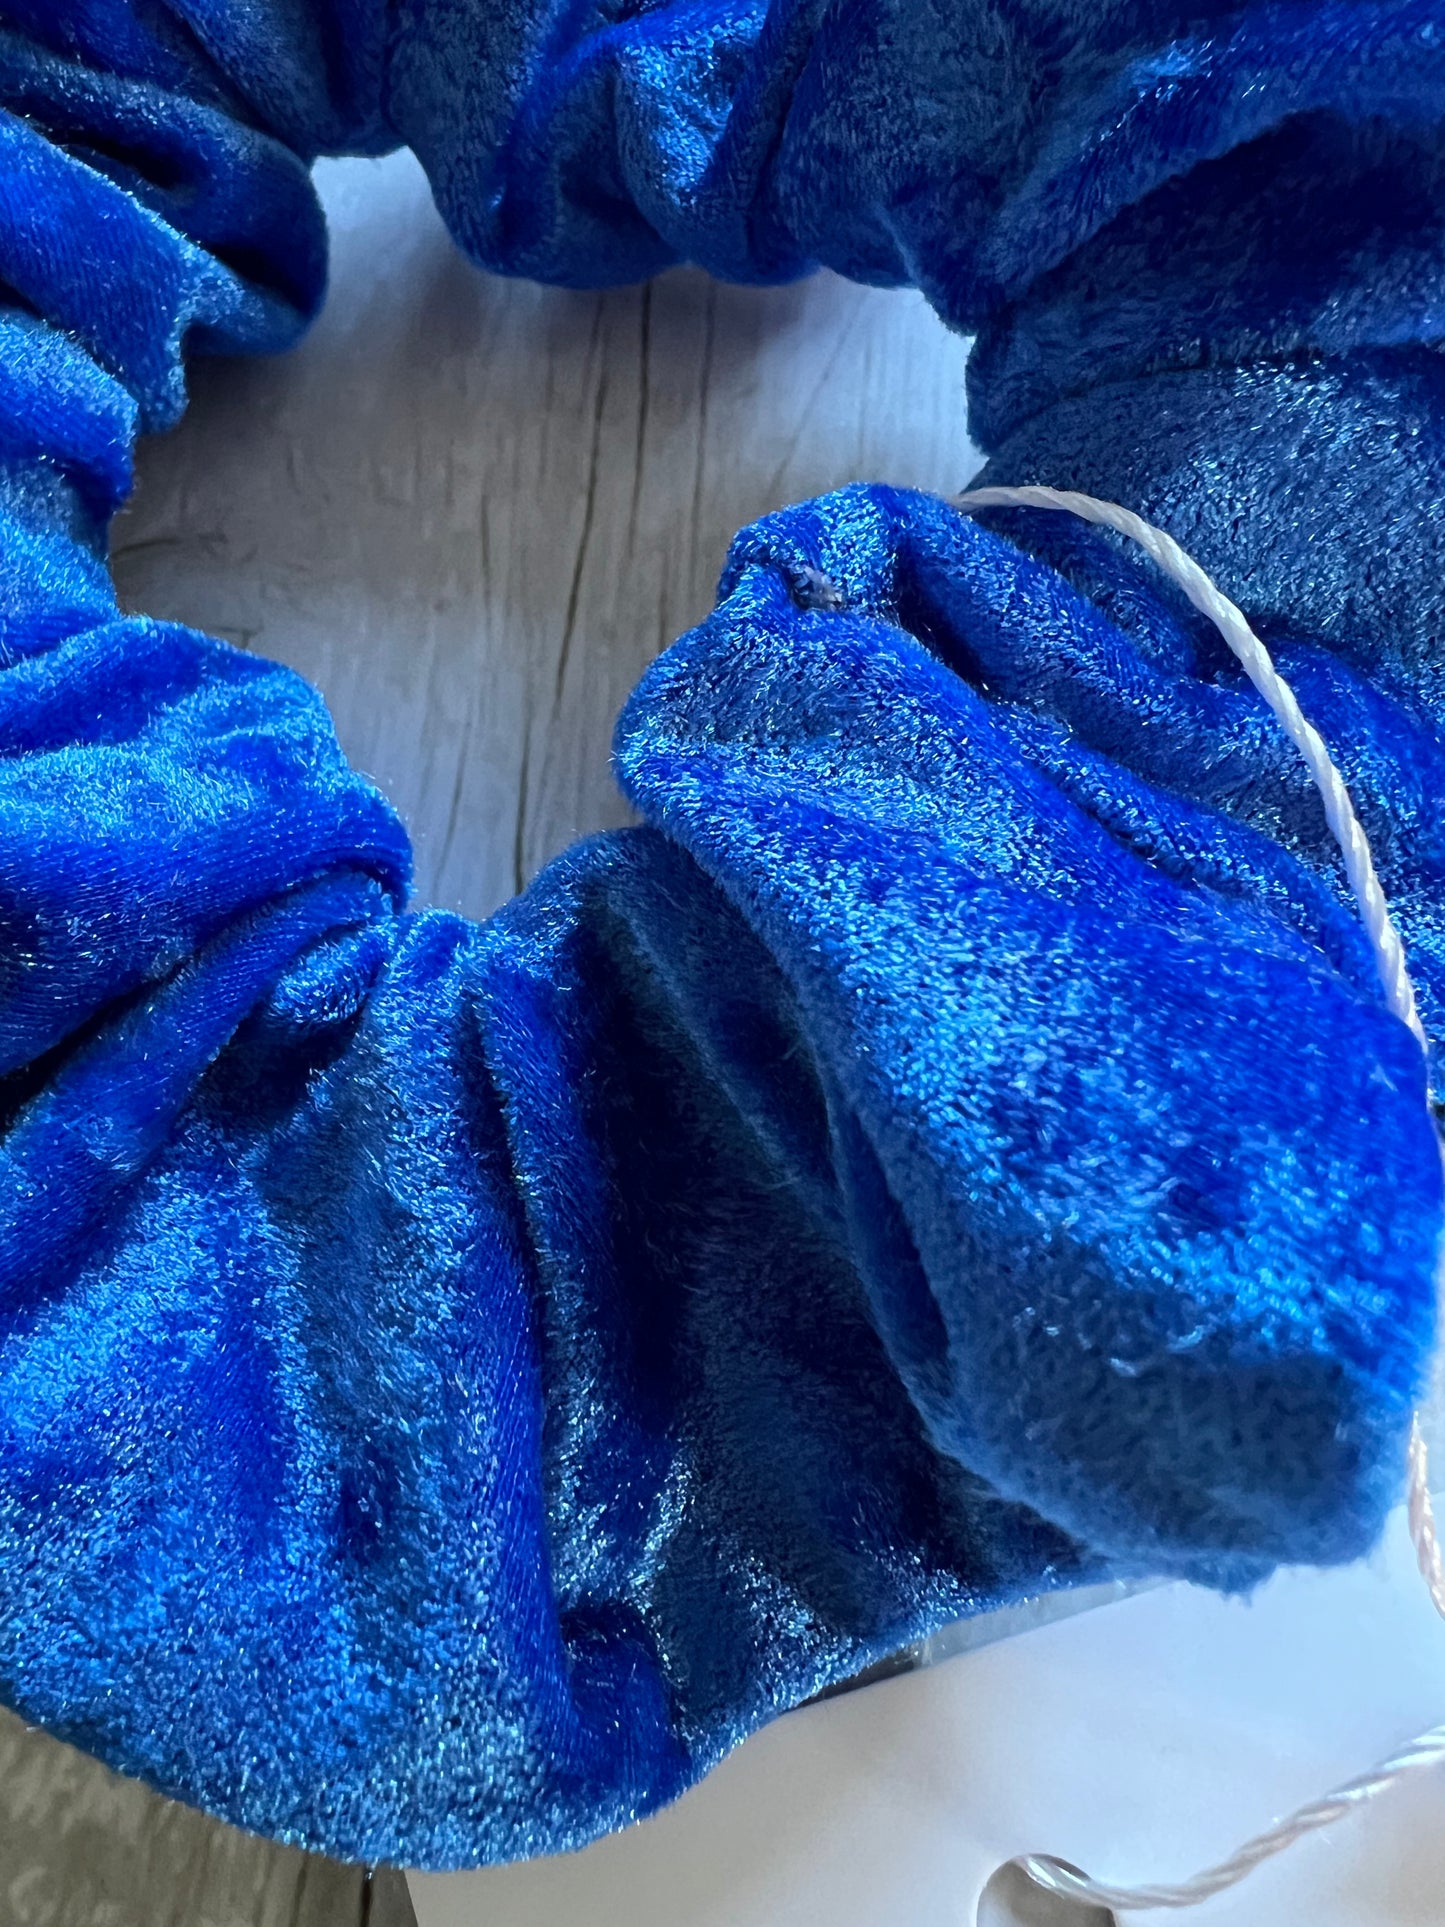 Blue Velvet Scrunchie